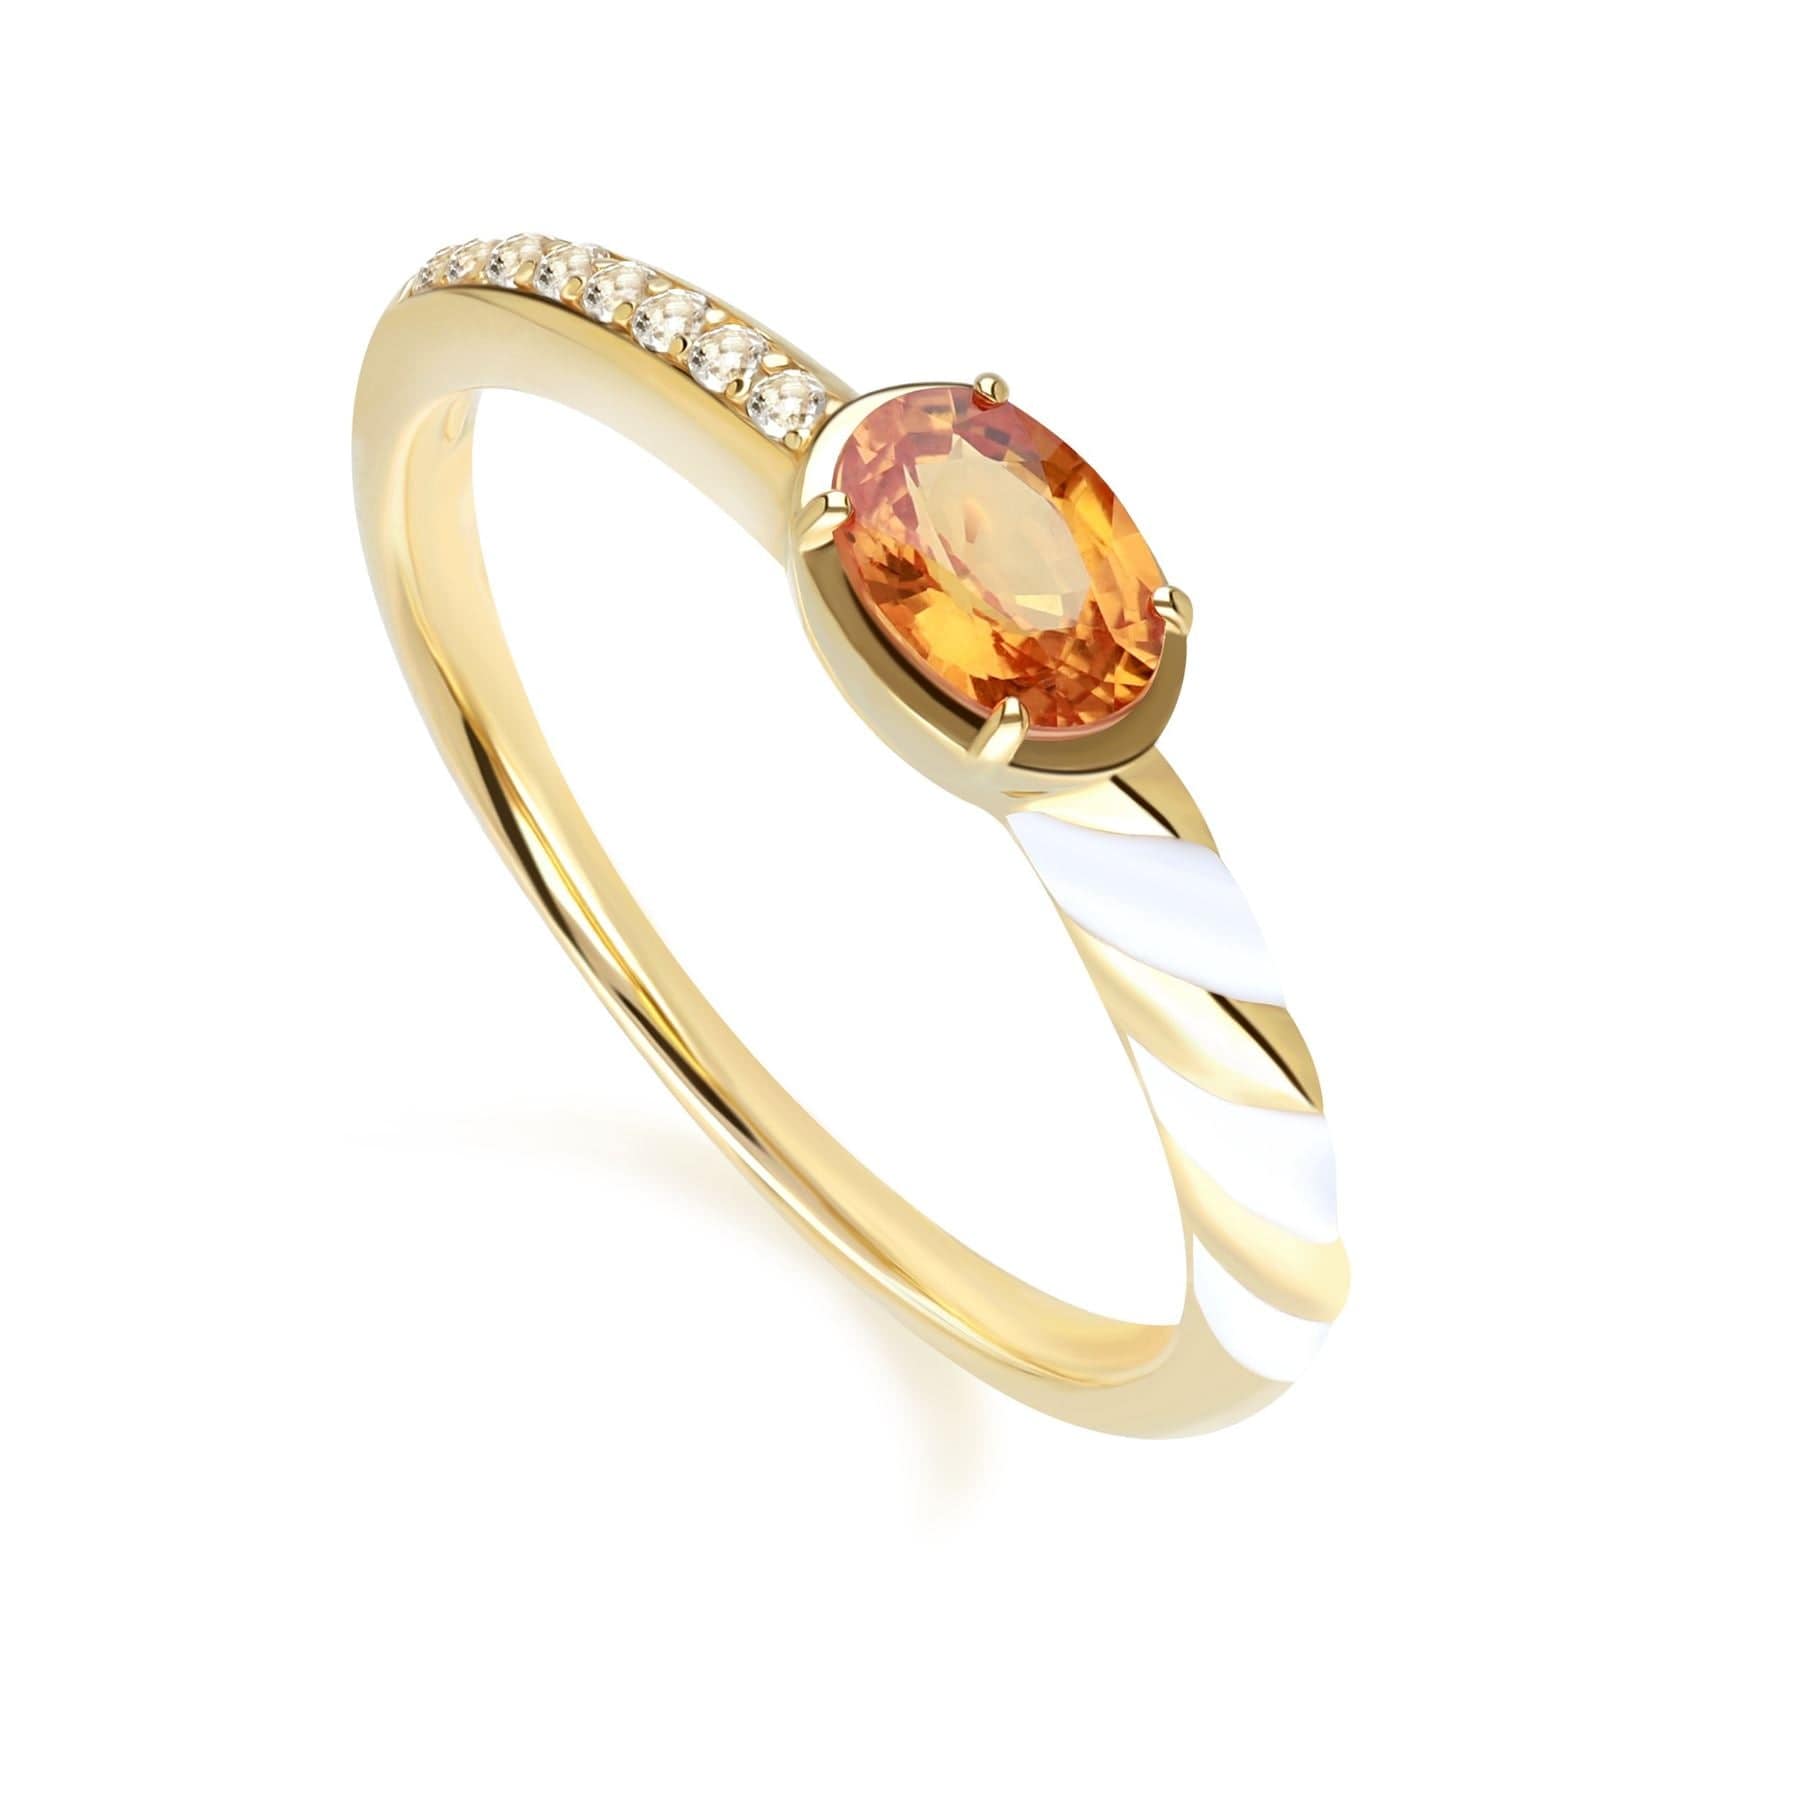 Gemondo Siberian Waltz White Topaz & Orange Sapphire Ring in 9ct Gold